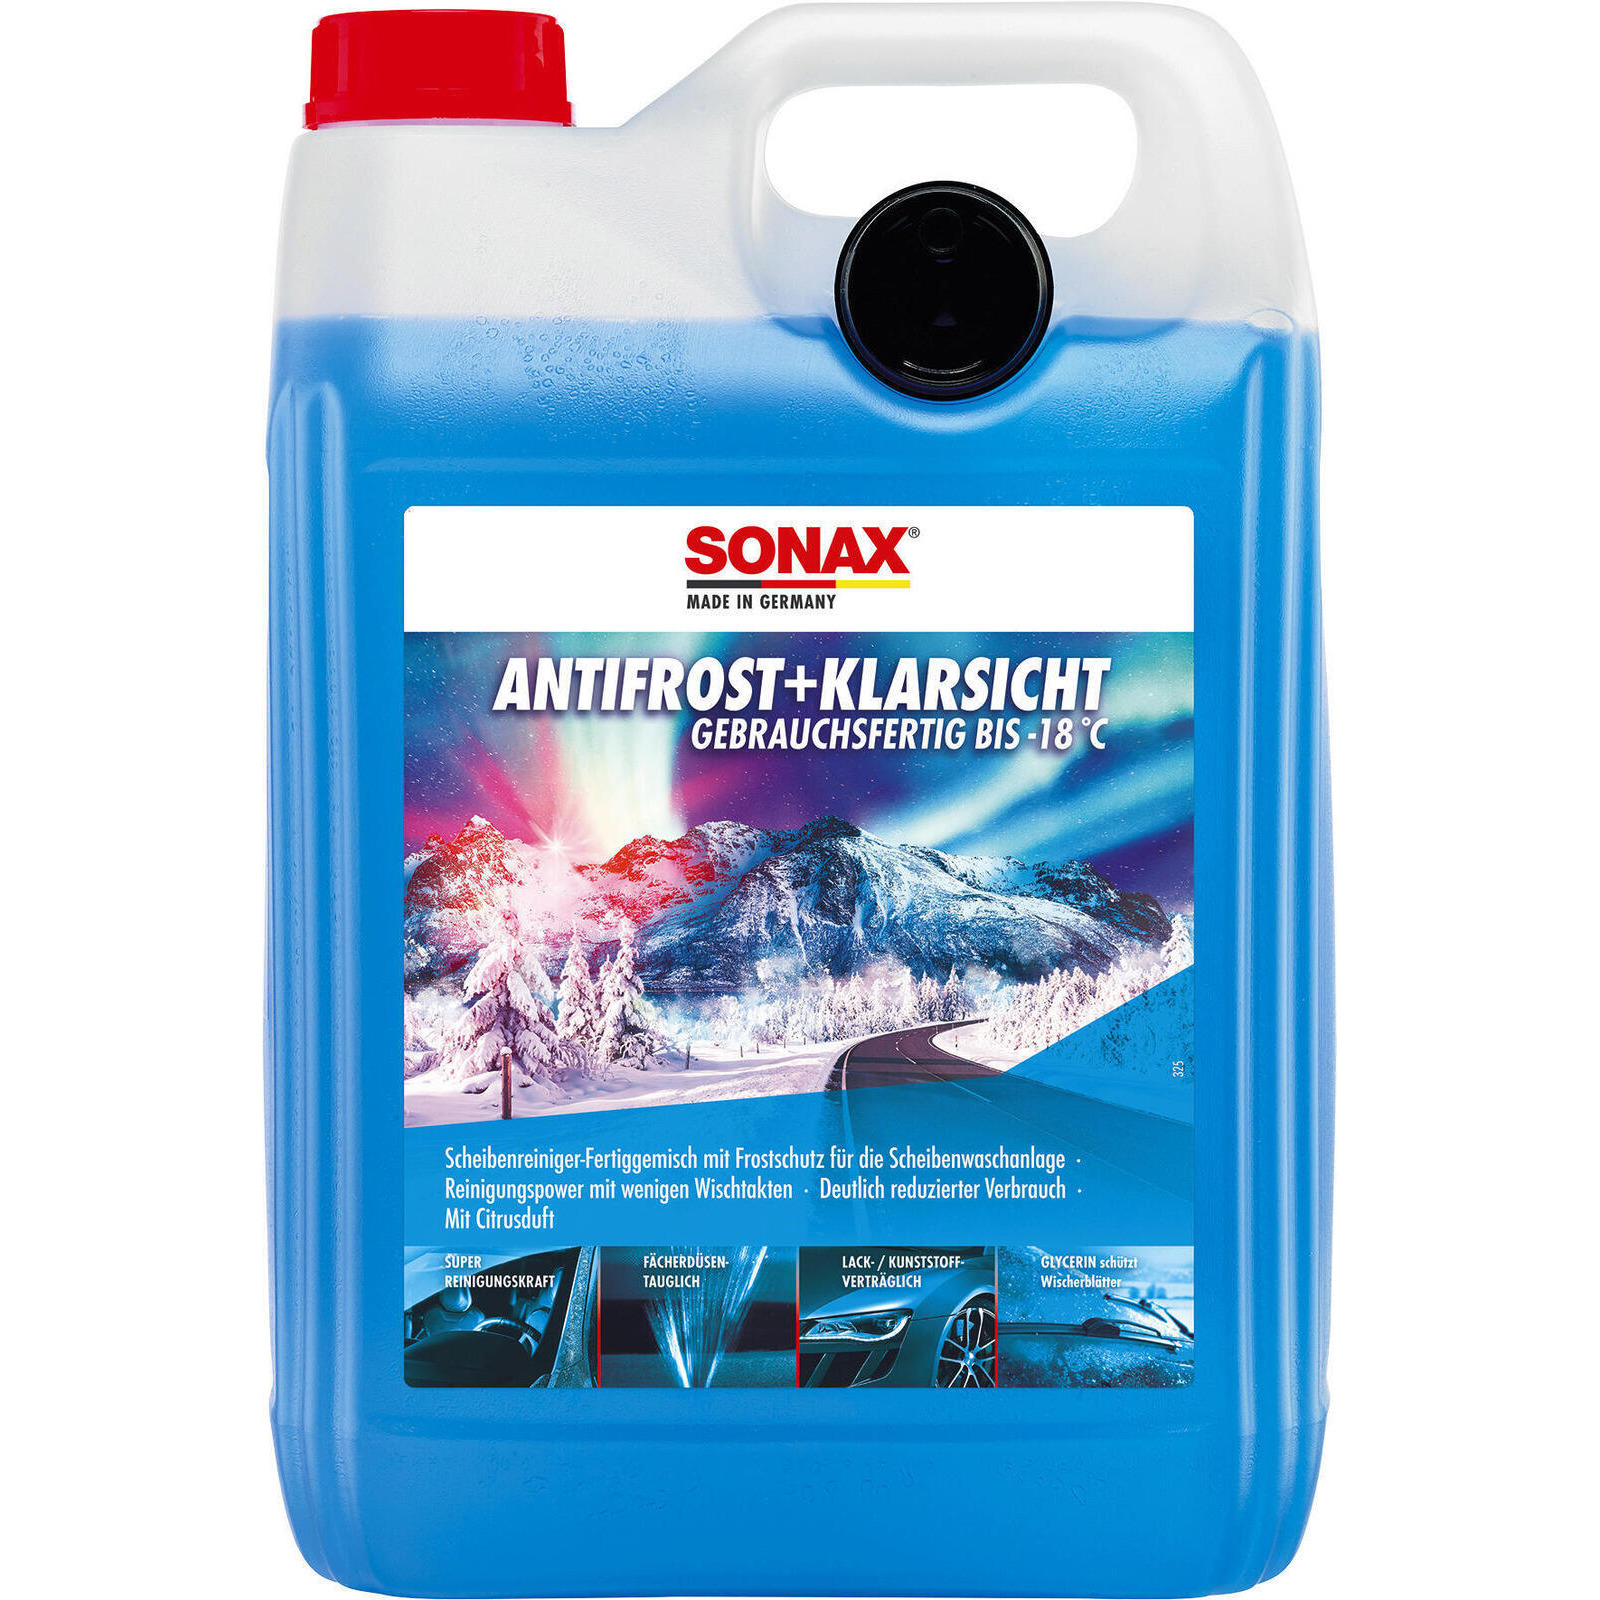 SONAX Frostschutz, Scheibenreinigungsanlage AntiFrost+KlarSicht bis -18 °C Citrus